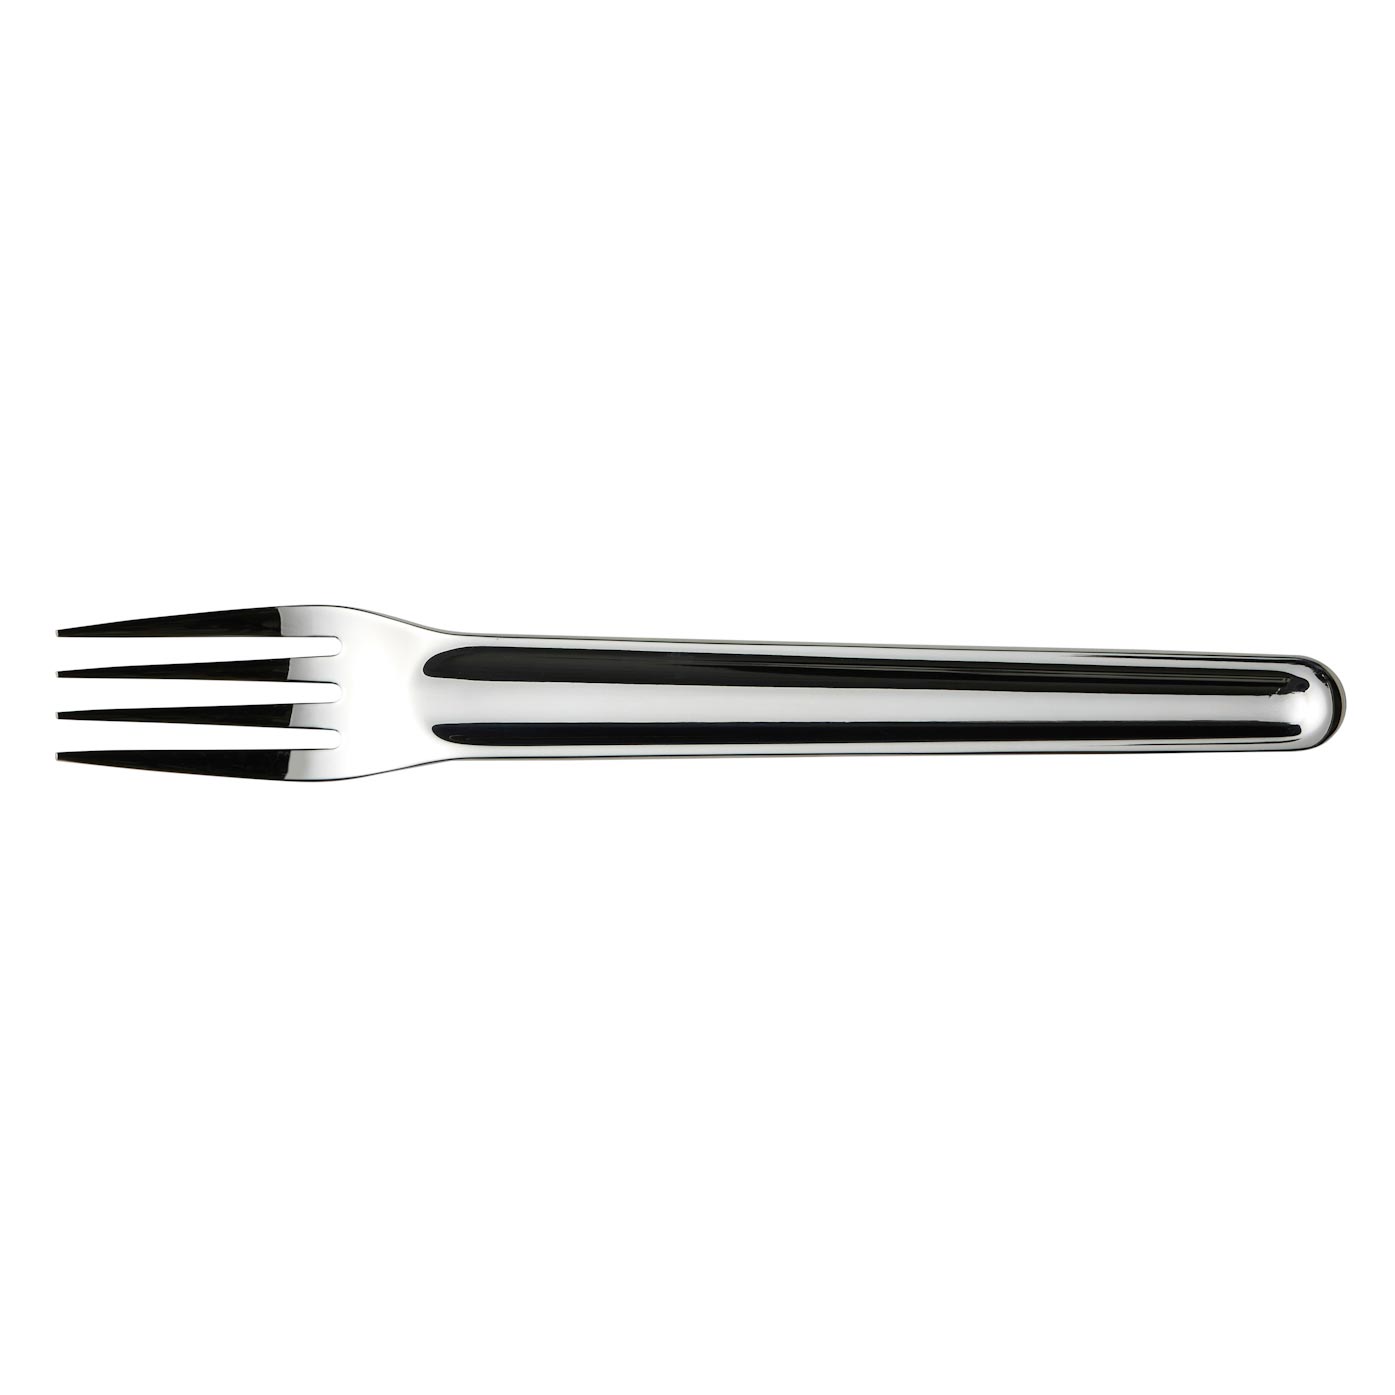 4 x Dinner Forks